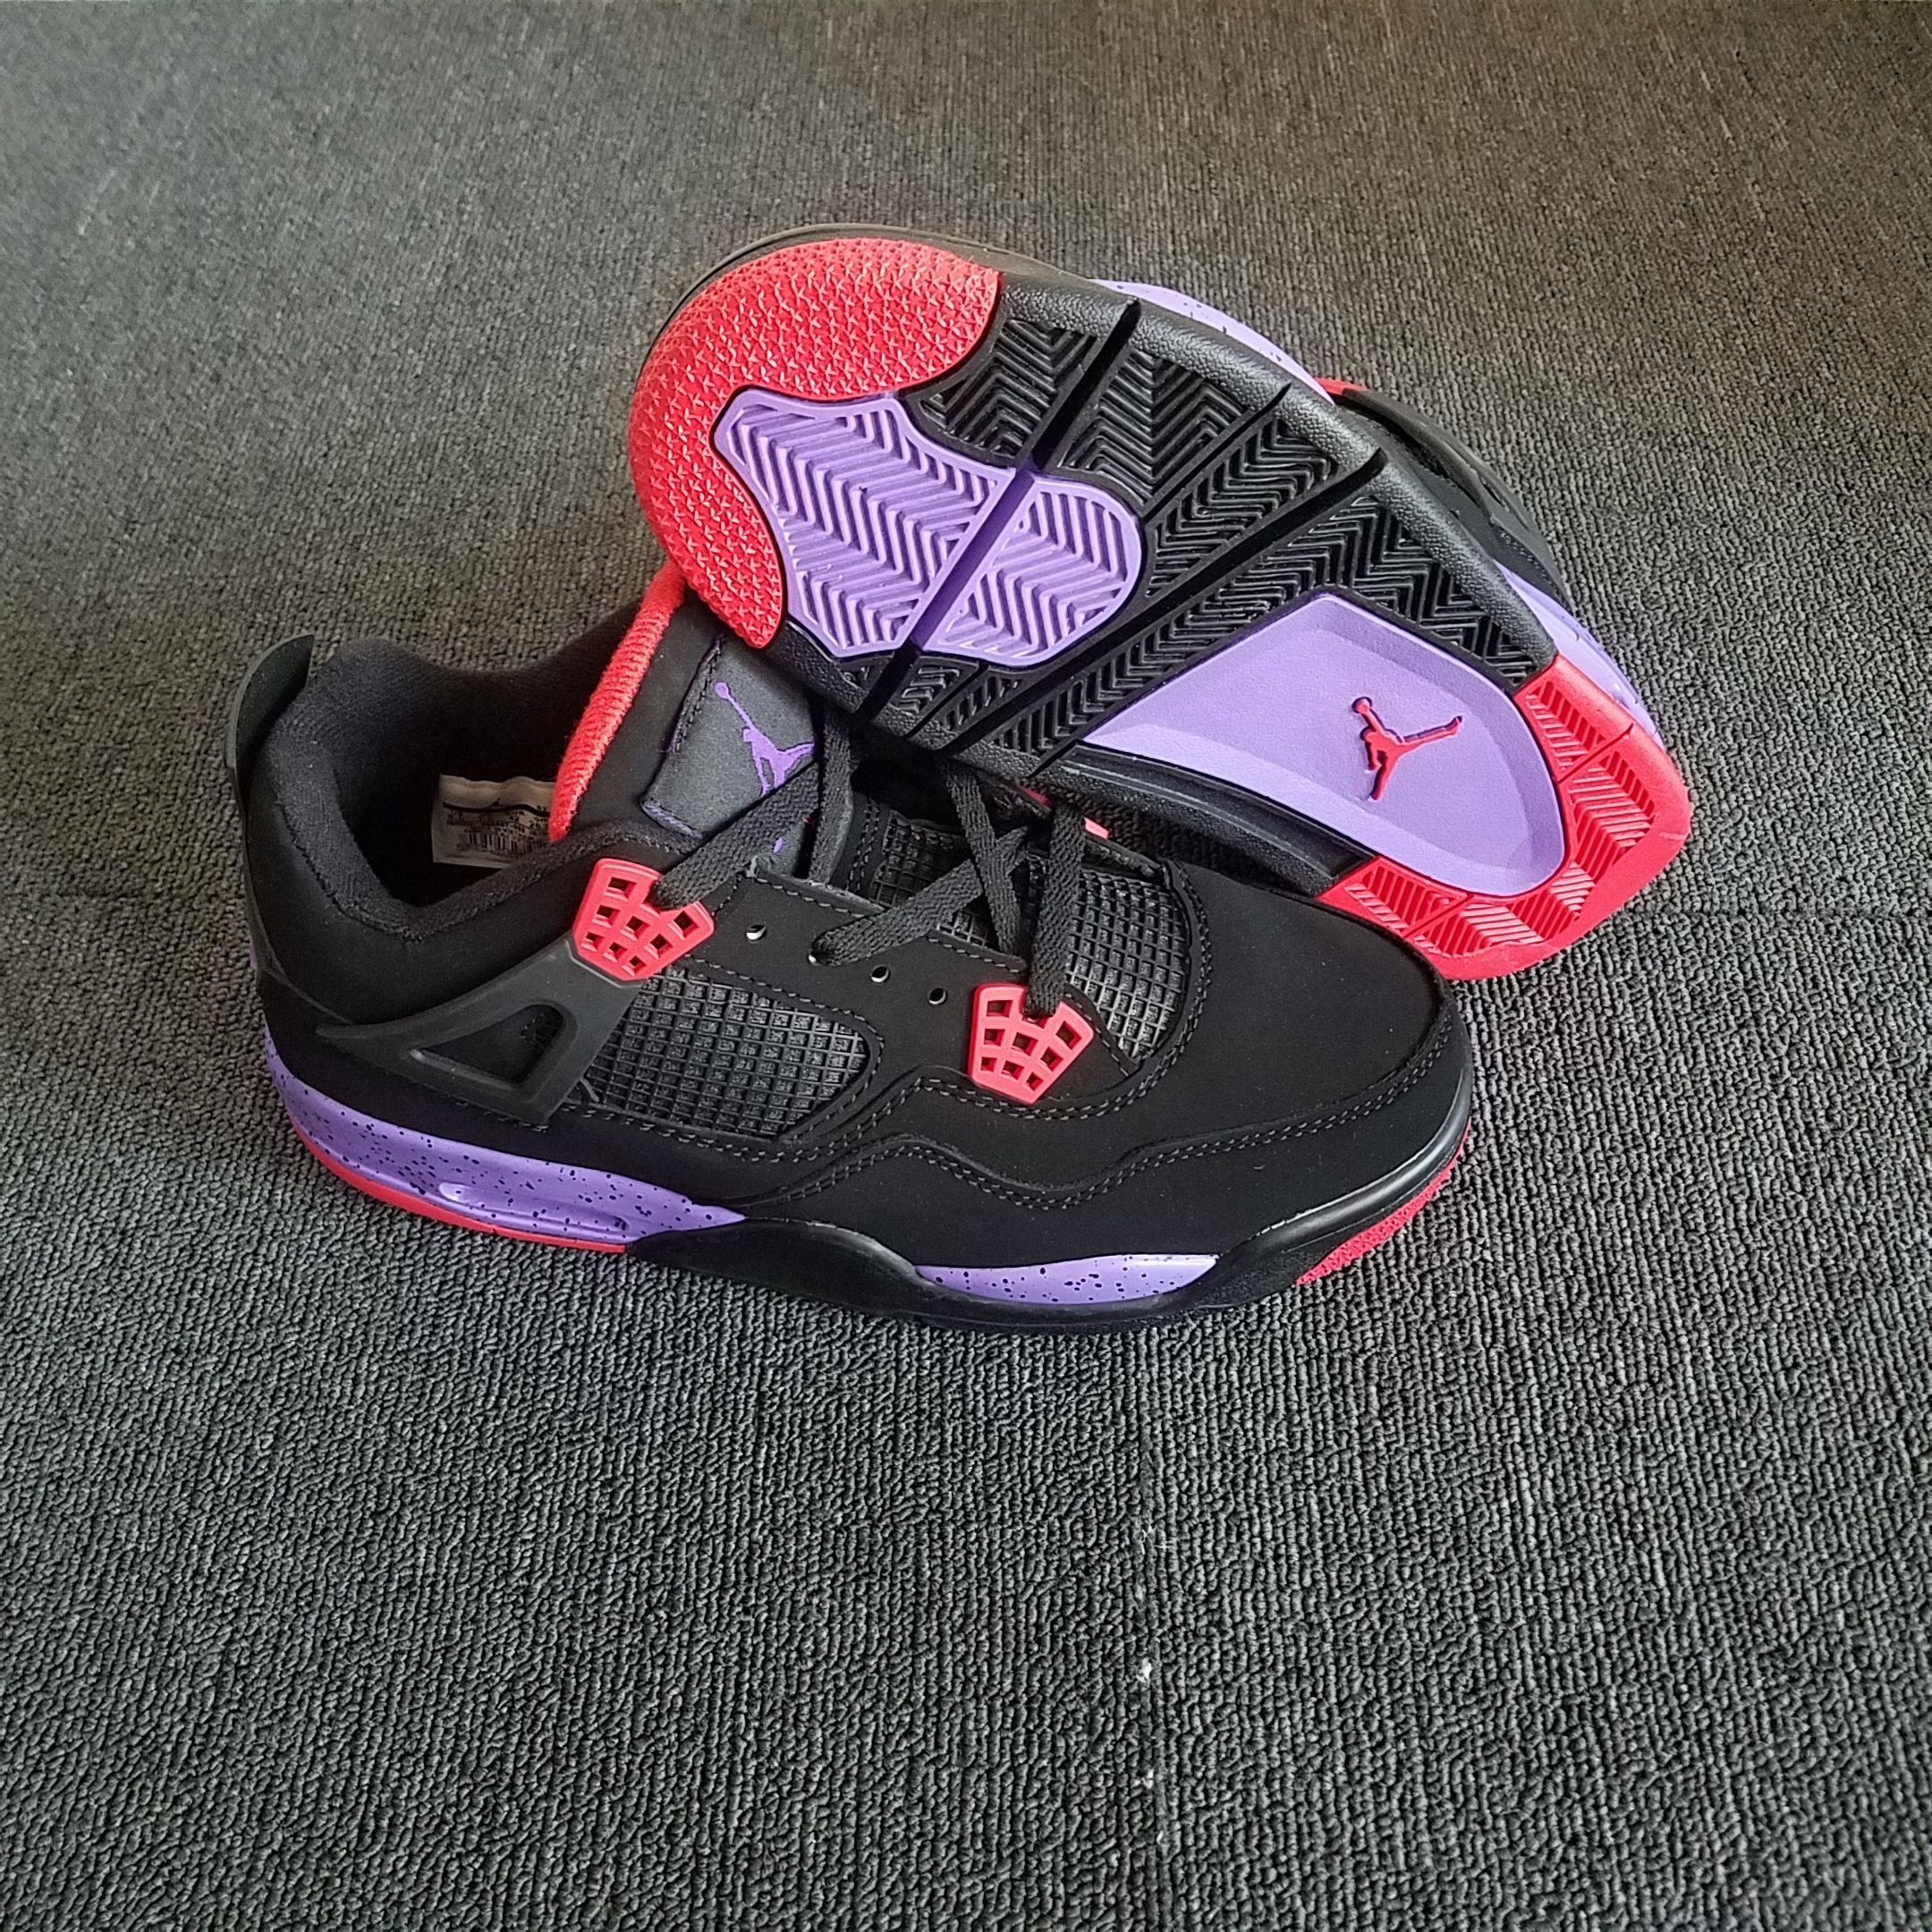 Women Air Jordan 4 “Raptors” Shoes